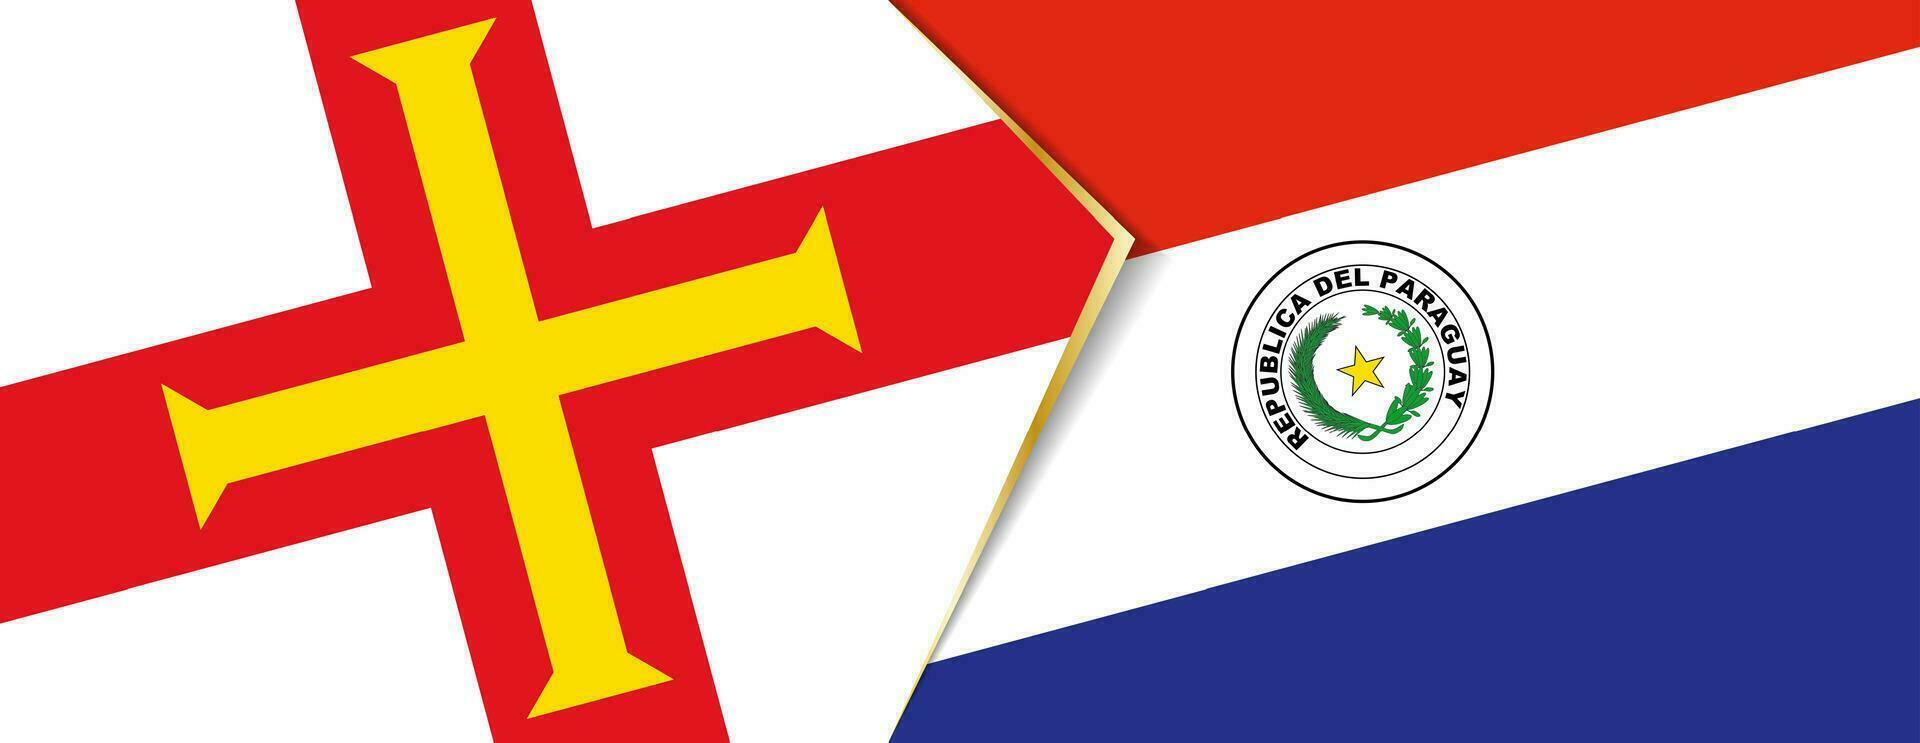 guernsey y paraguay banderas, dos vector banderas